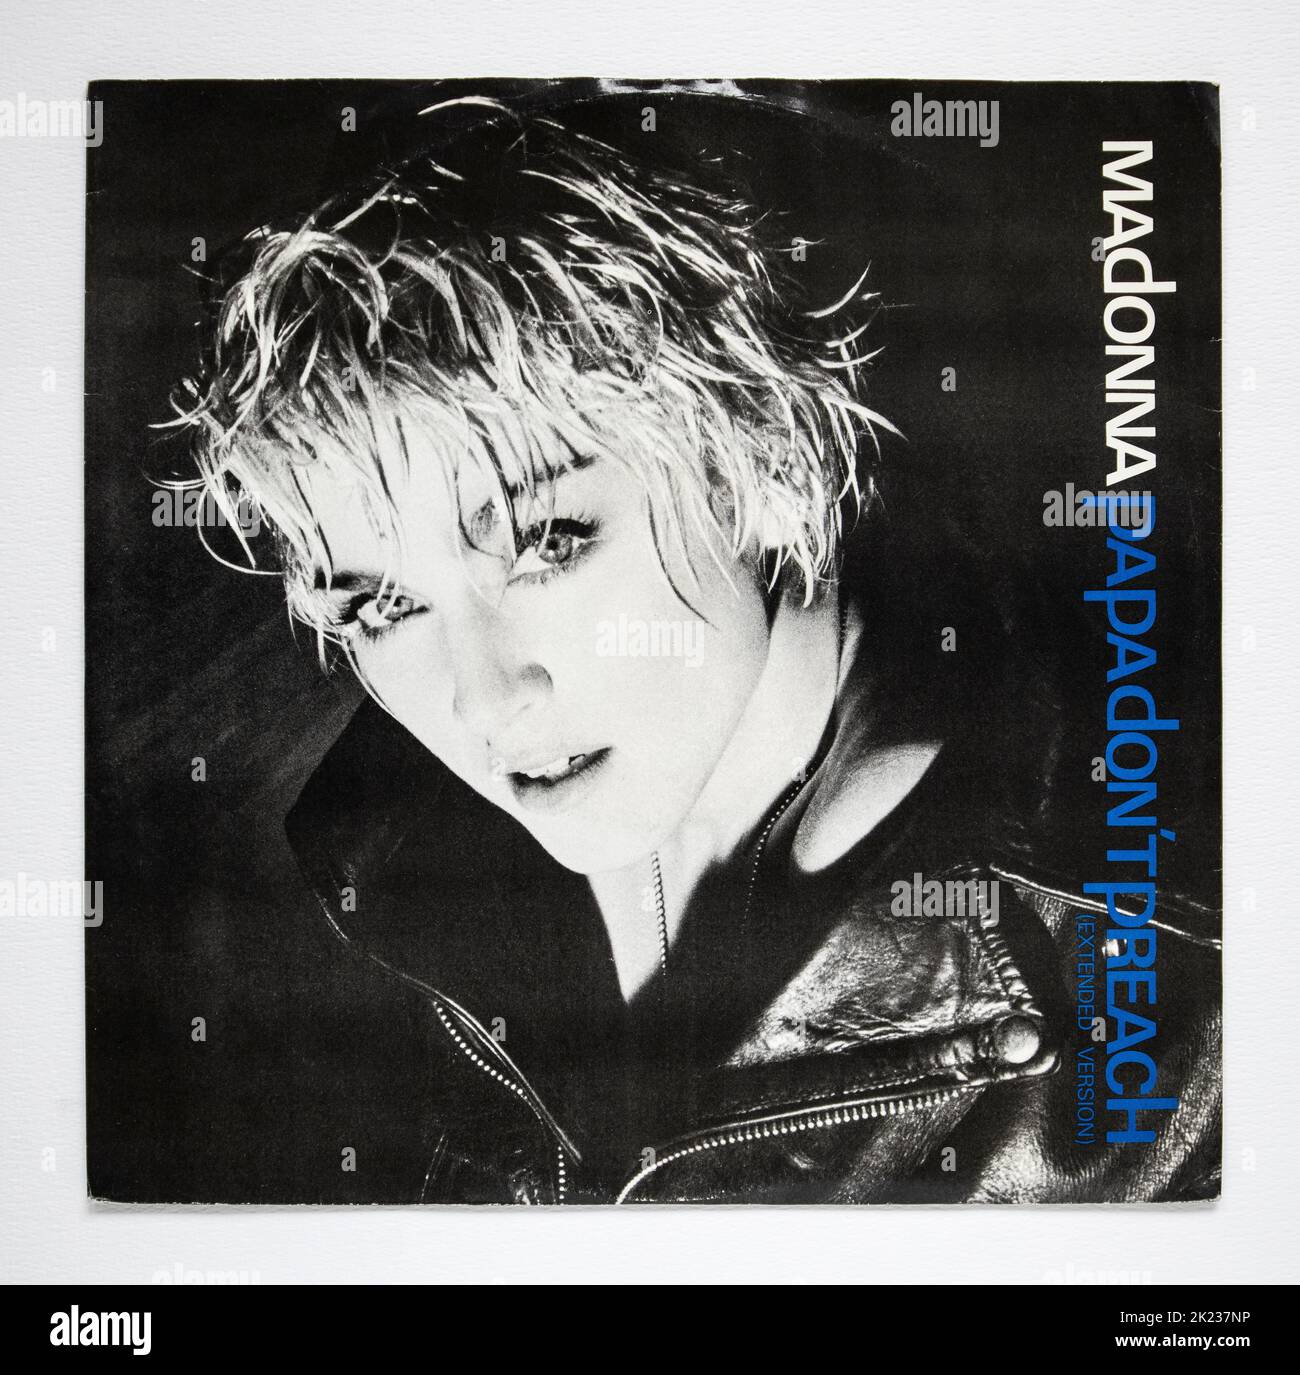 Couverture de l'image de la version simple de 12 pouces de Papa ne prêche pas par Madonna, qui a été publié en 1986. Banque D'Images